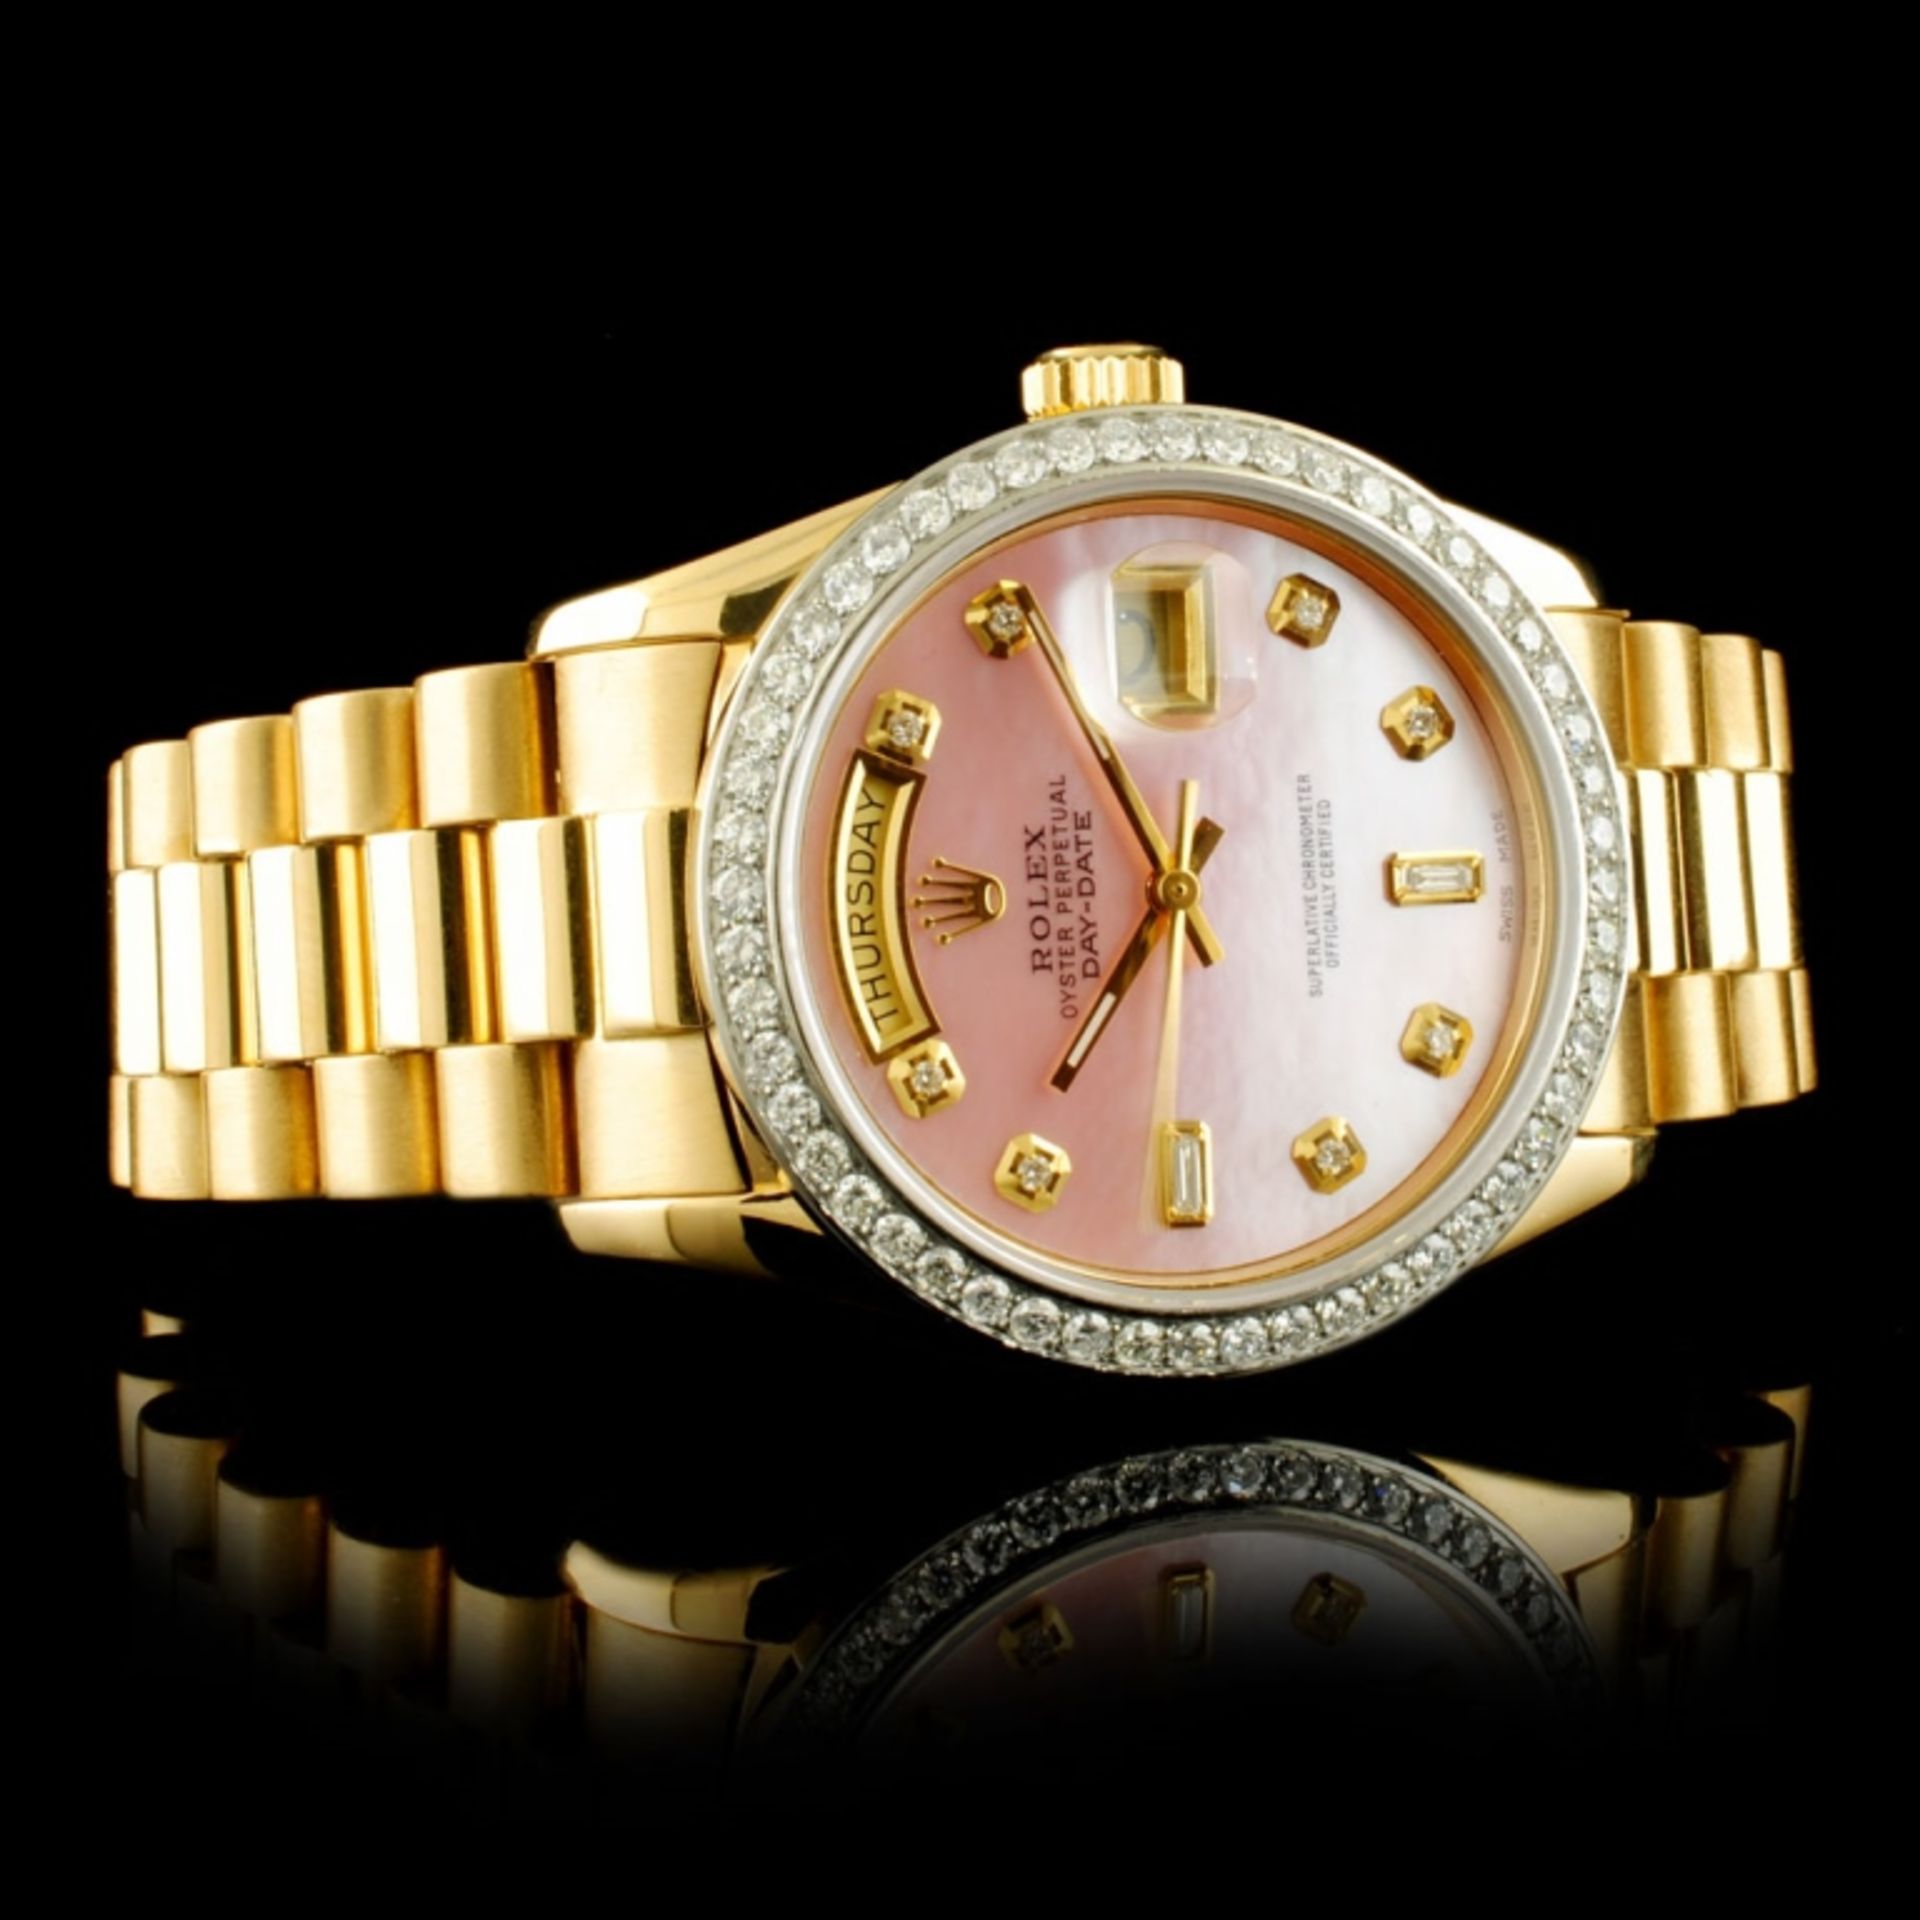 Rolex Day-Date 18K YG 1.35ct Diamond Wristwatch - Image 4 of 5